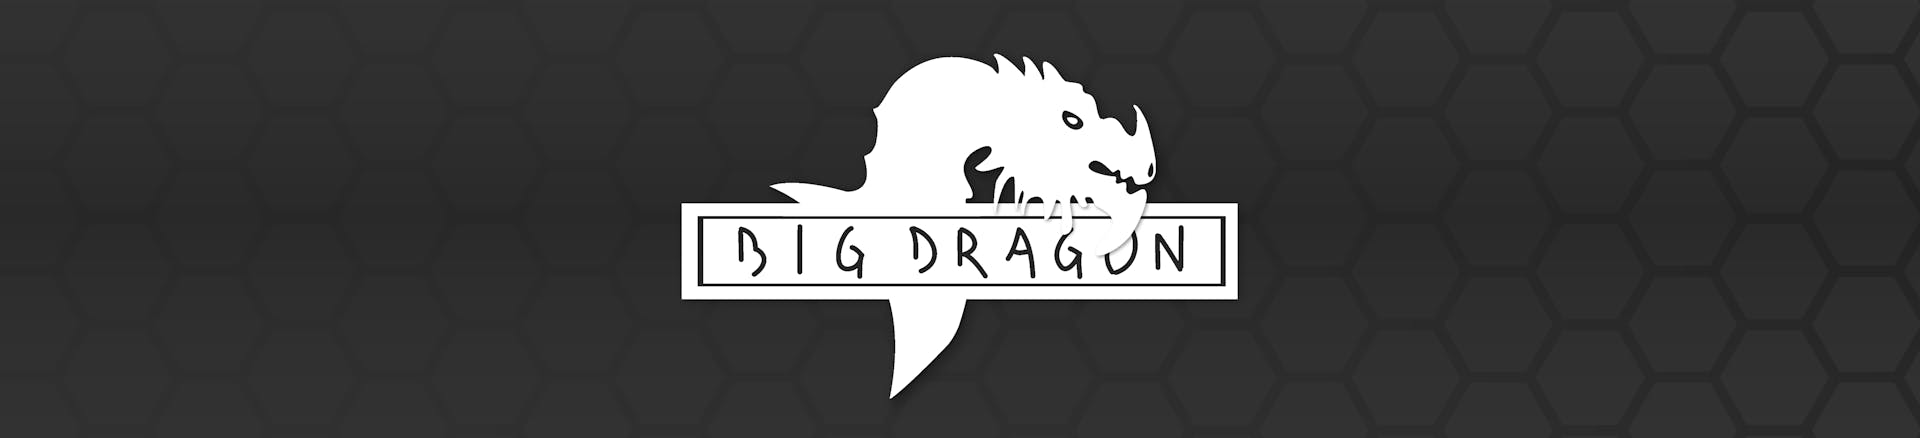 Big Dragon Airsoft